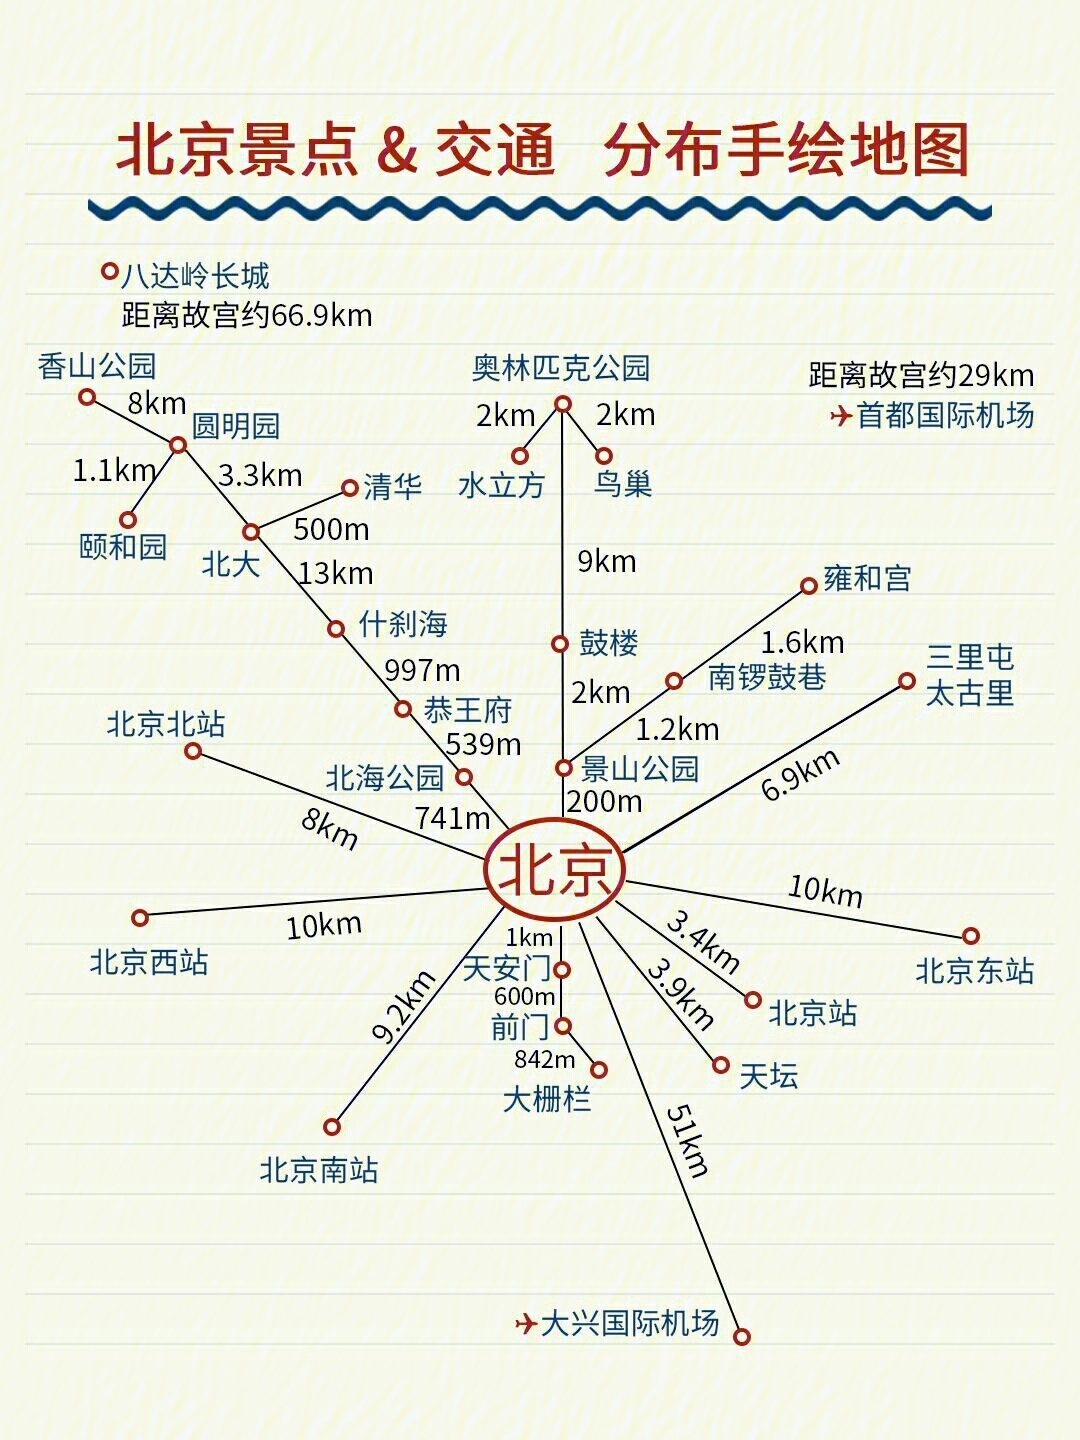 北京旅游路线地图简单图片